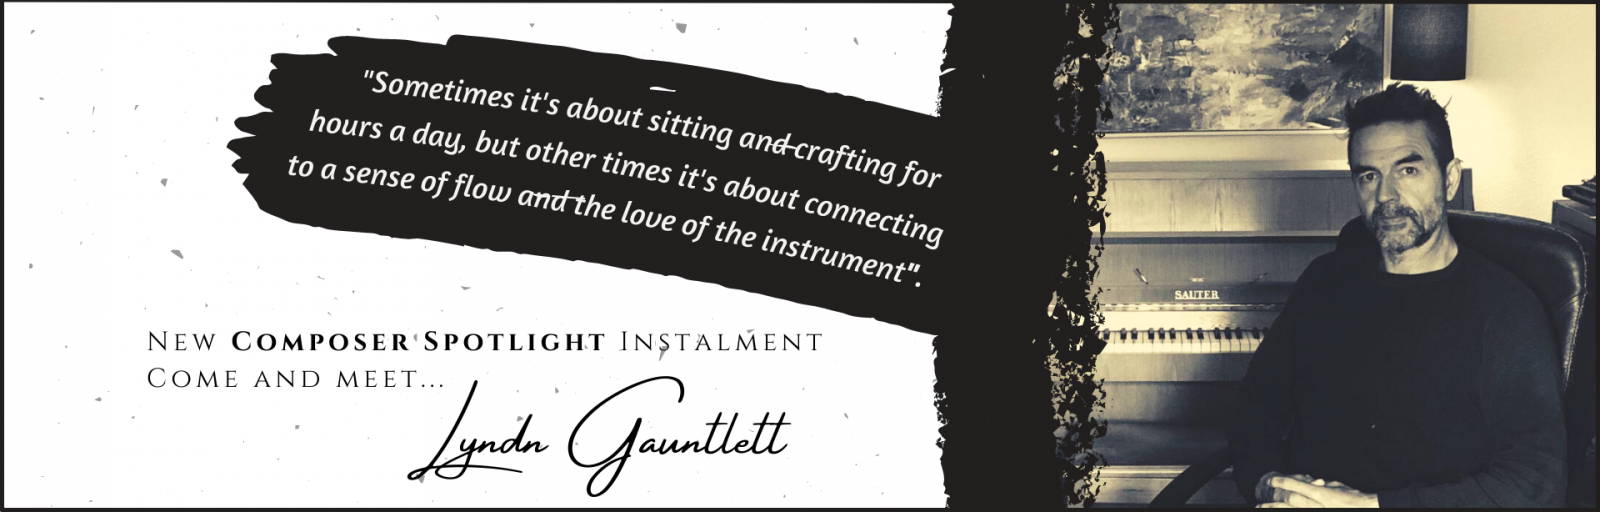 Lyndn Gauntlett - Composer Spotlight